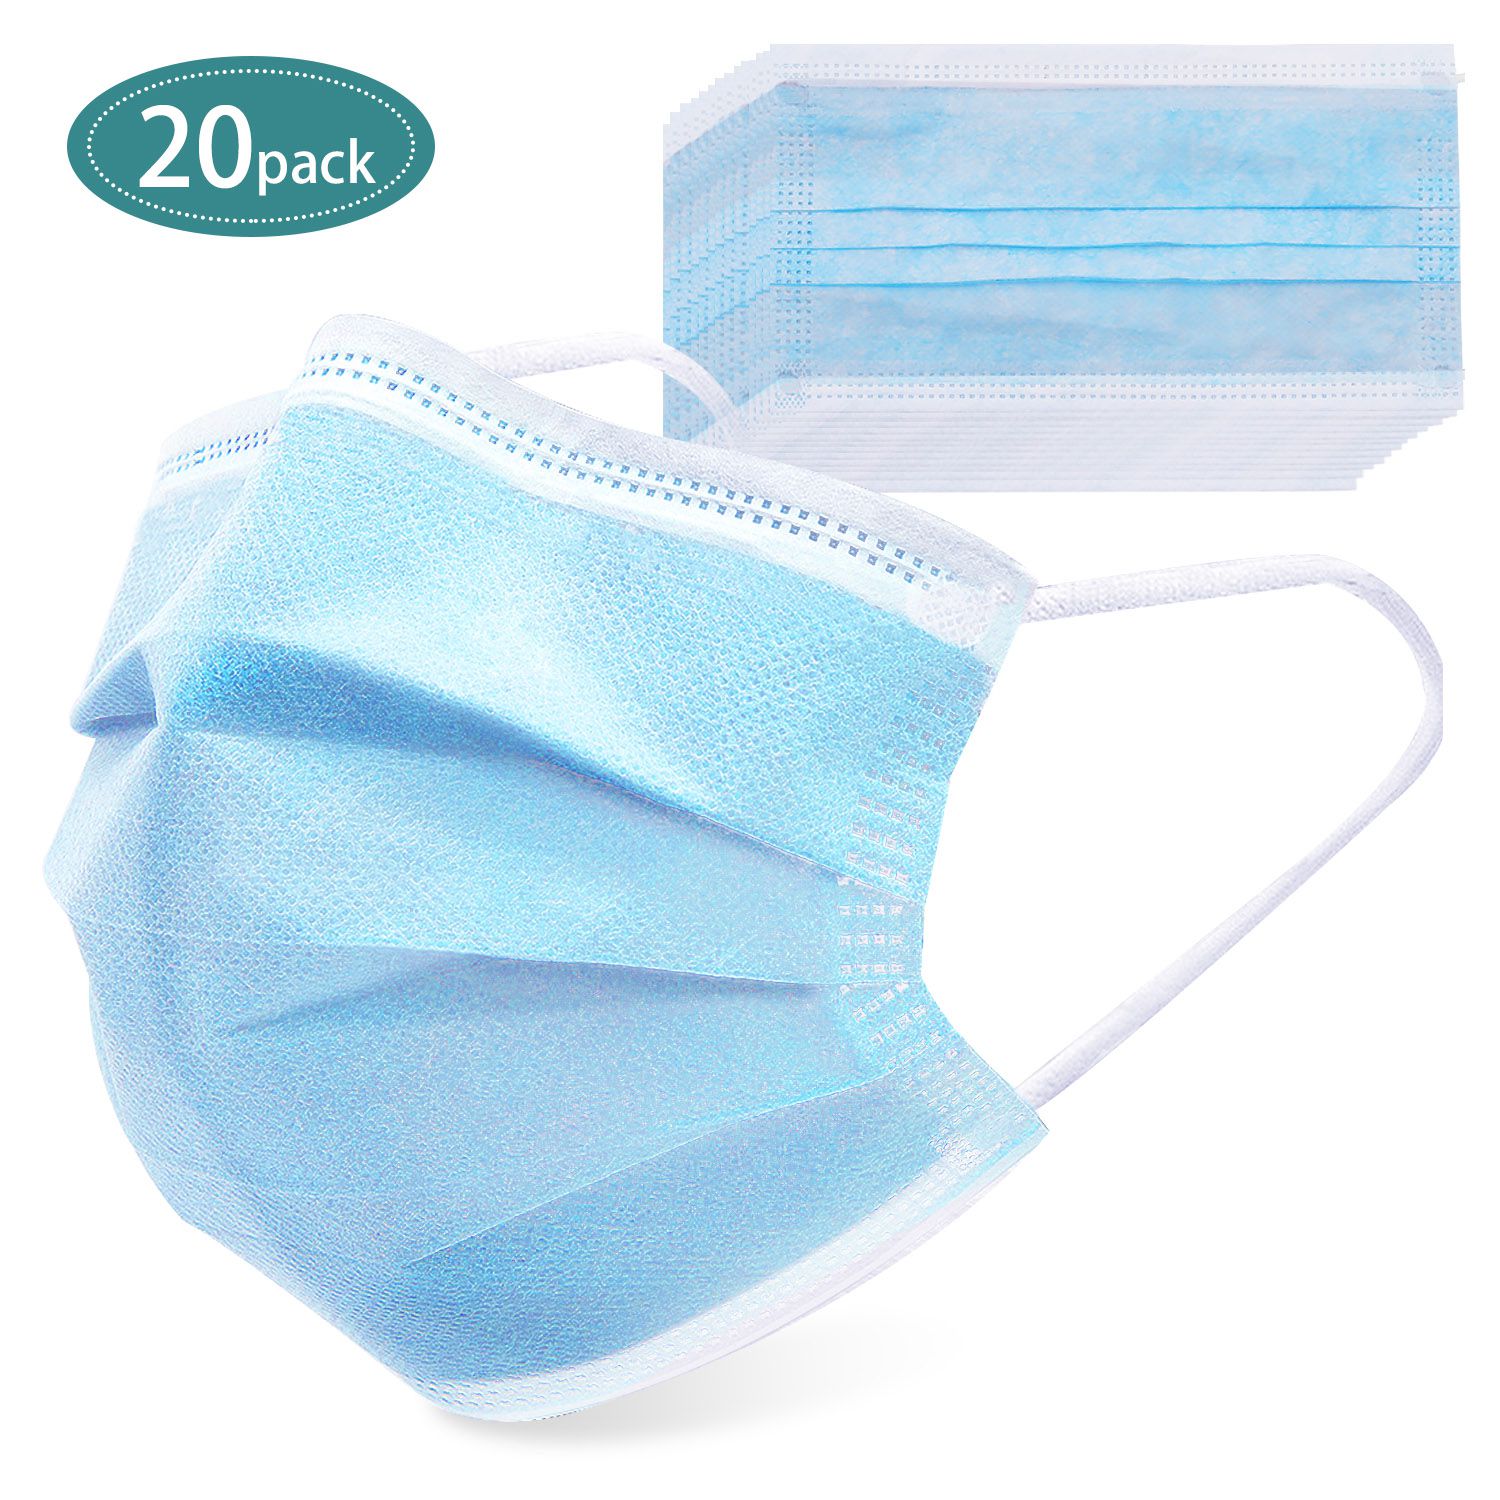 одноразовая маска для лечения уха 20 упаковок